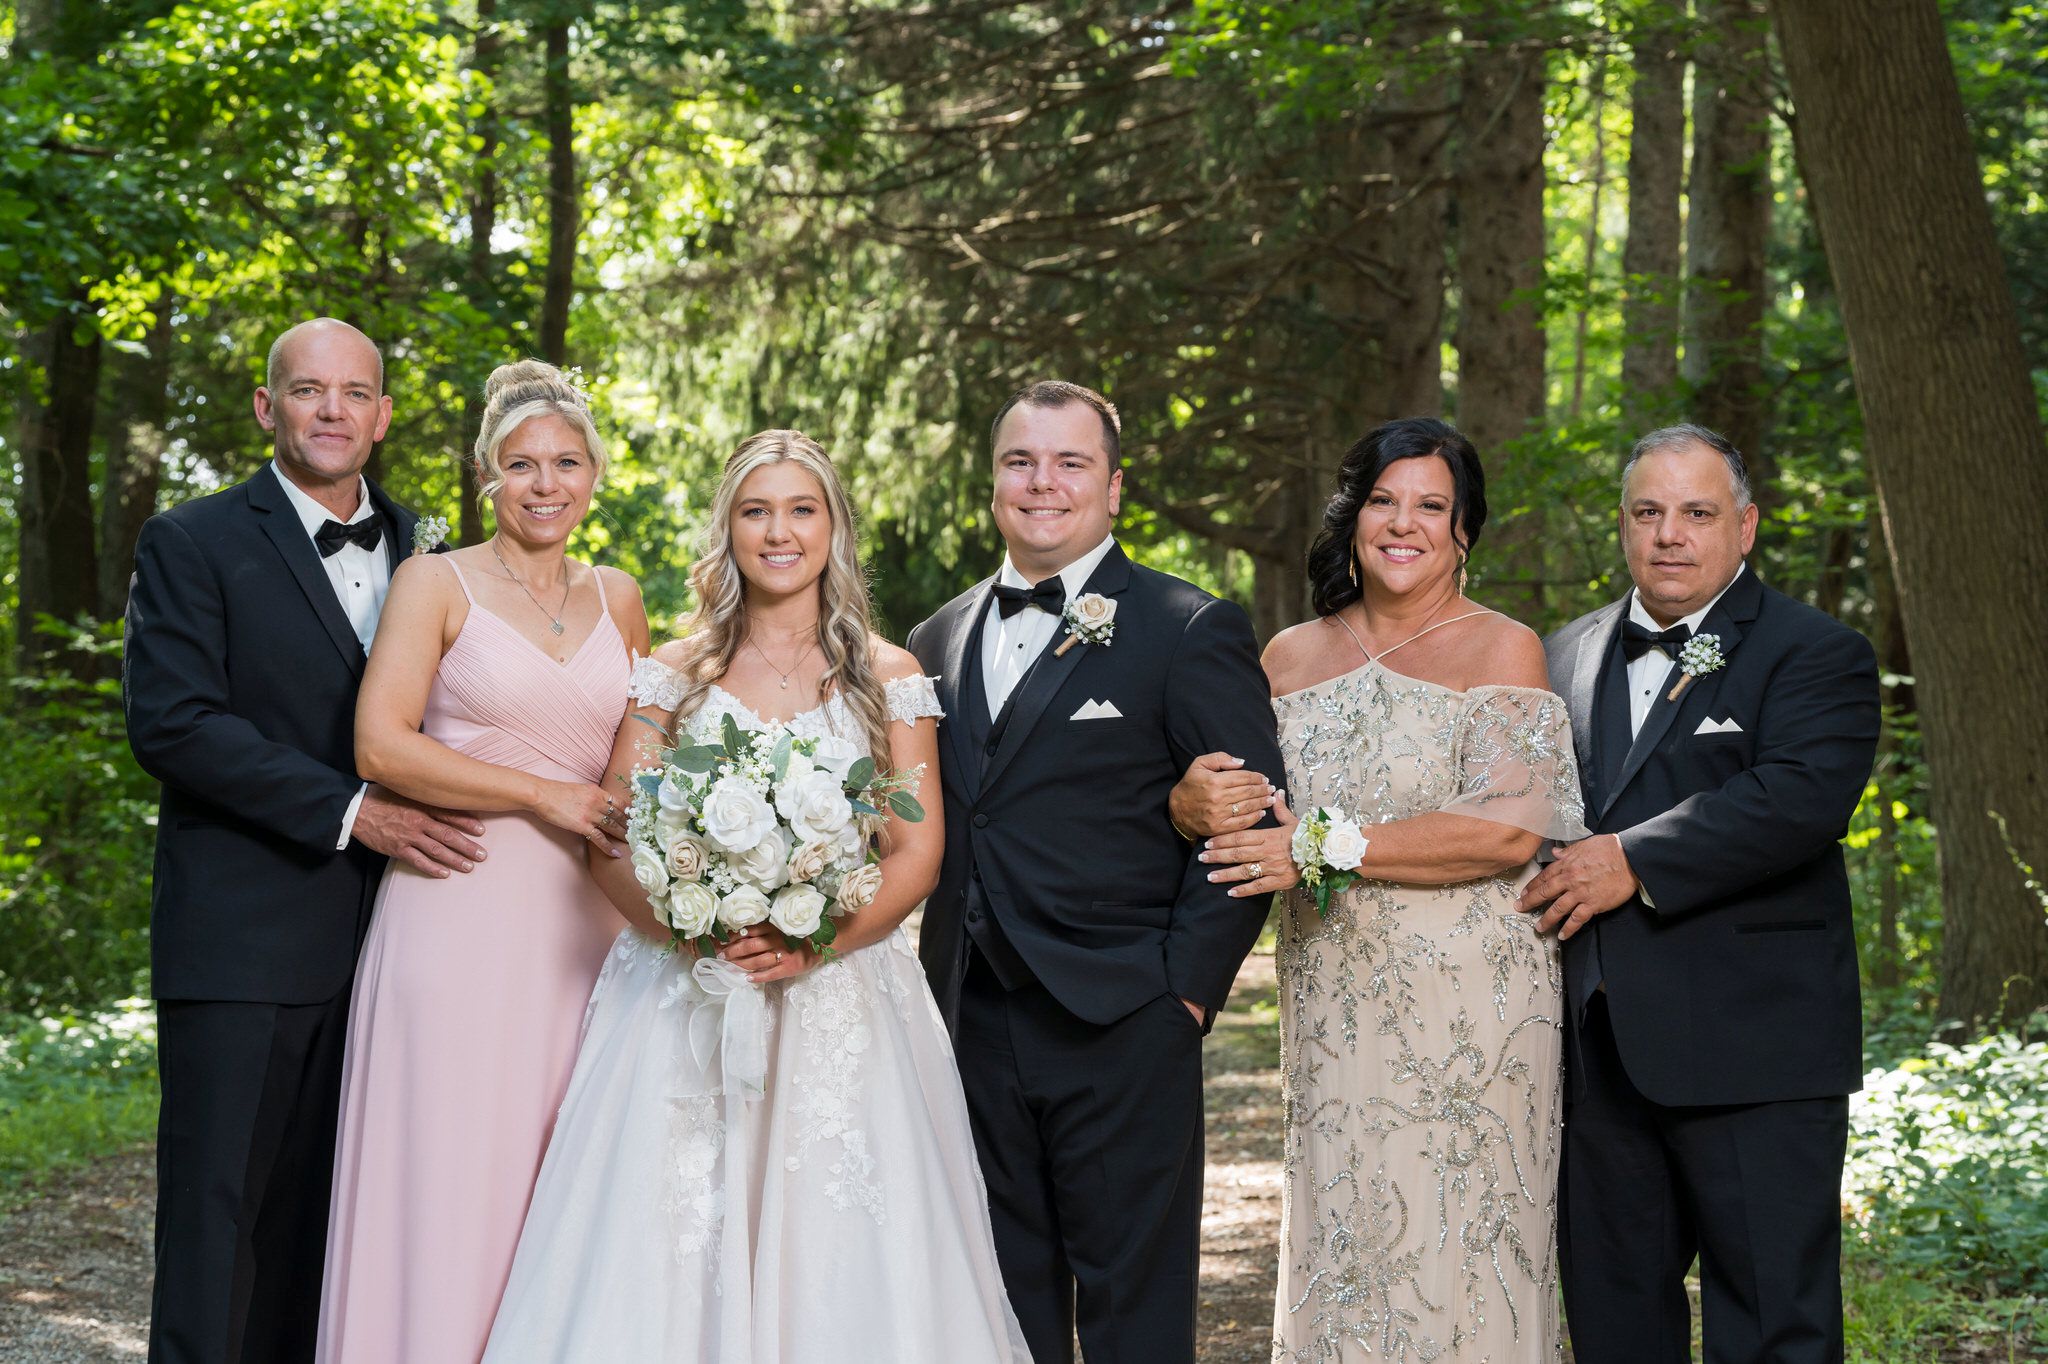 Family formals at a Stony Creek wedding.